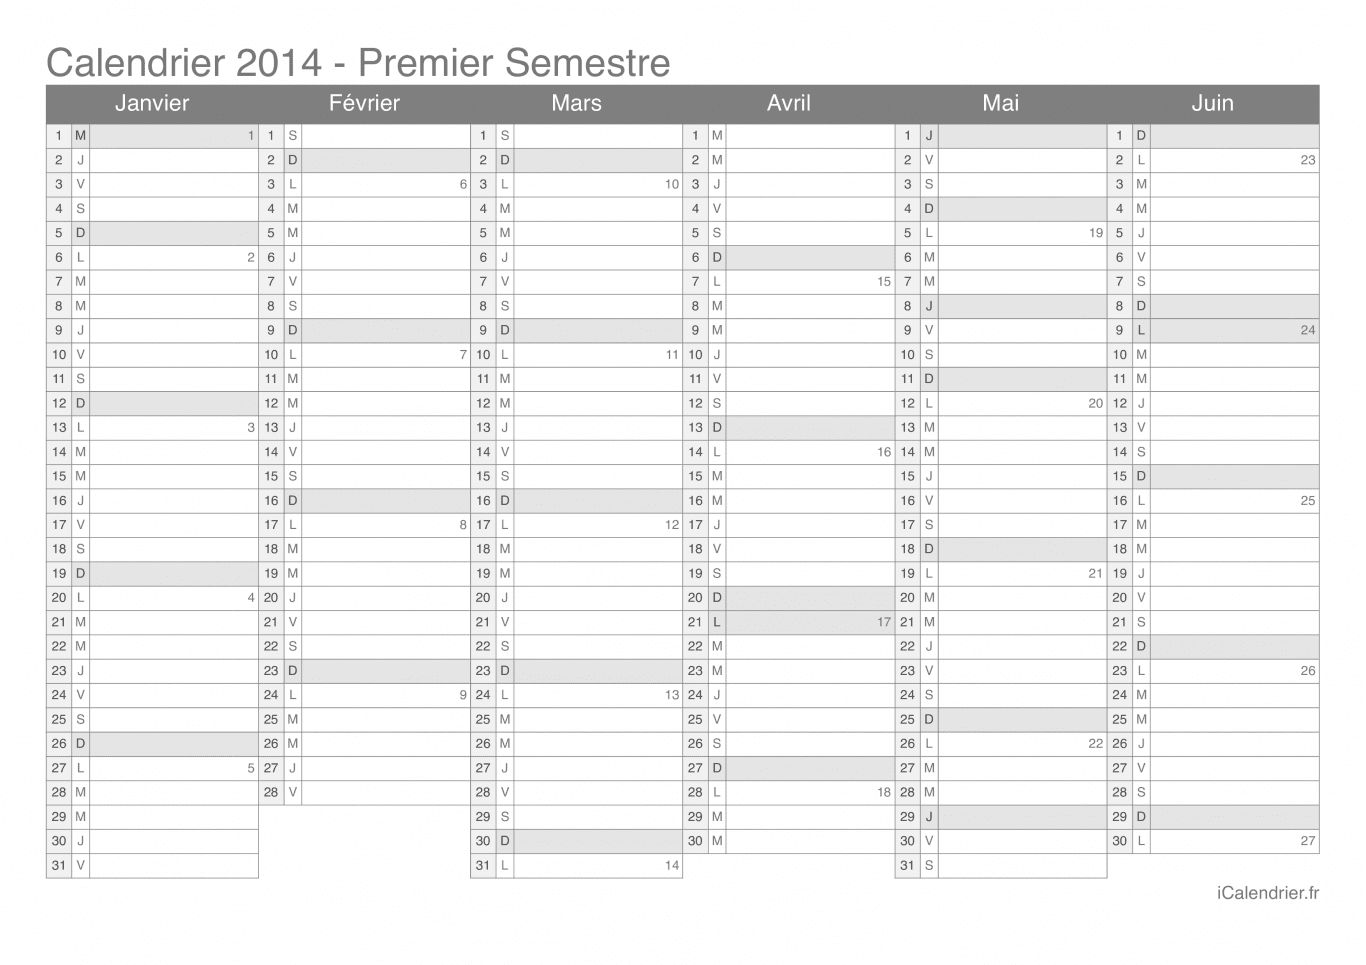 Calendrier par semestre avec numéros des semaines 2014